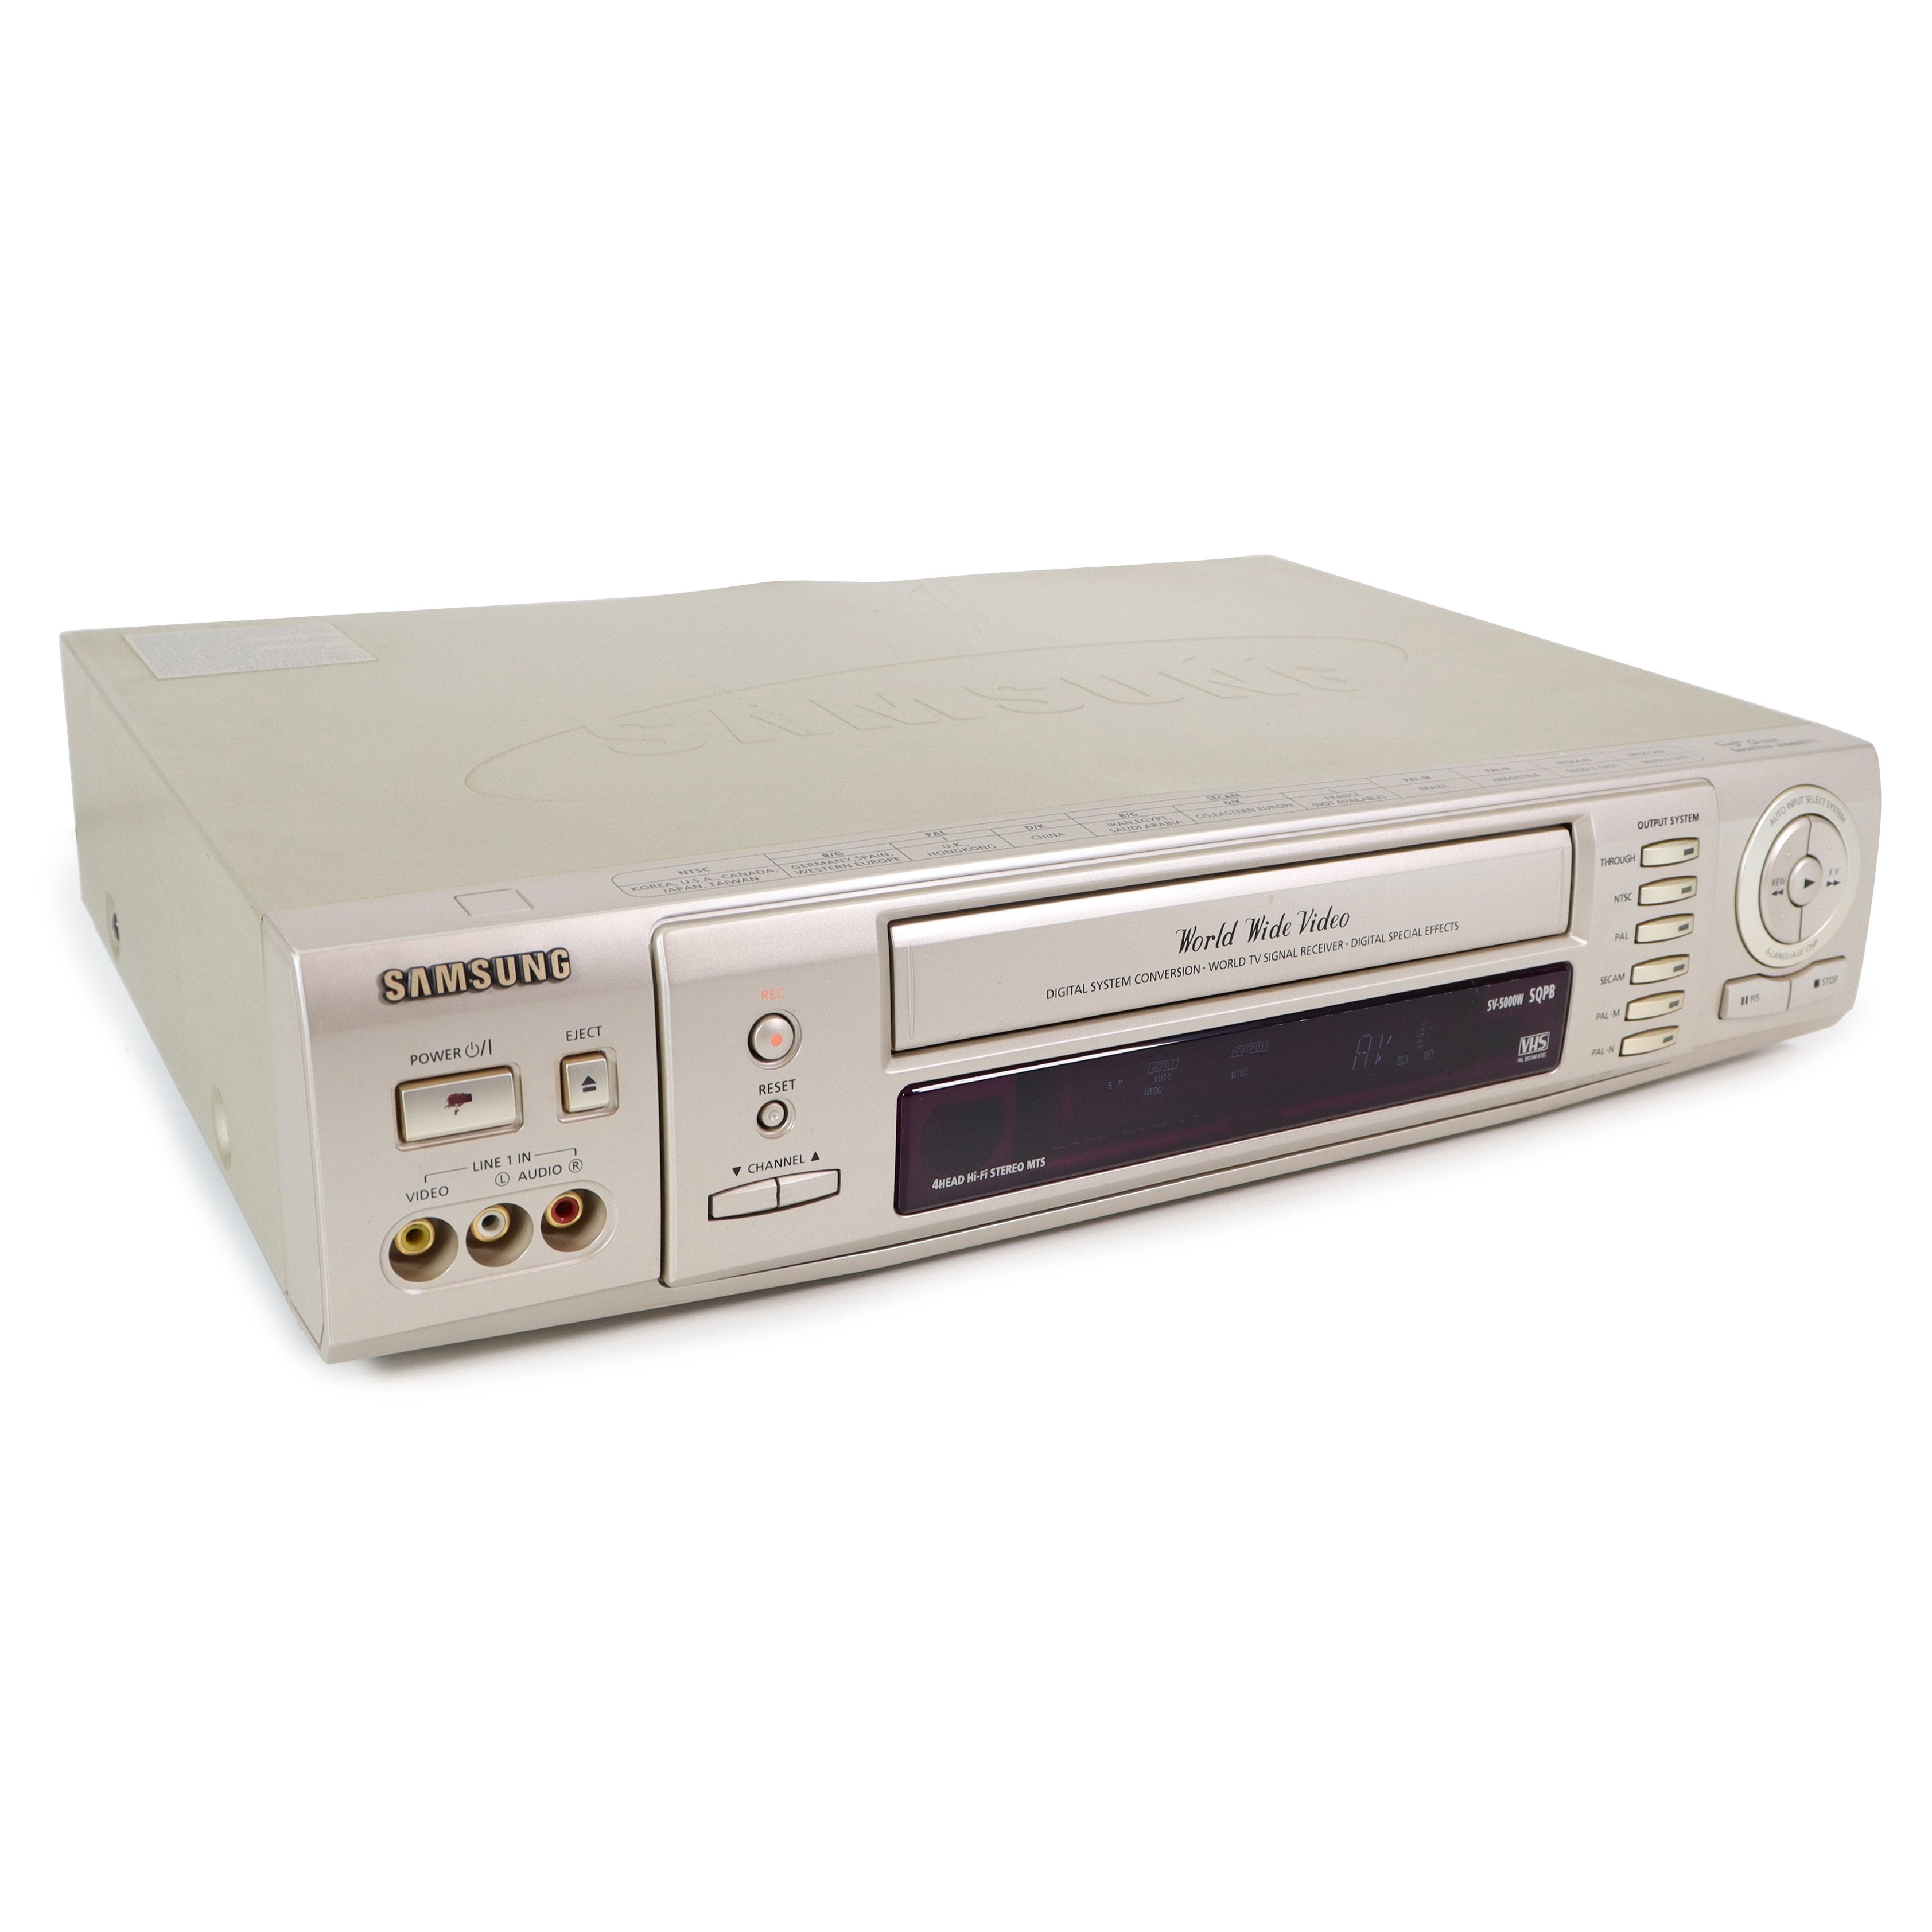 ワールドワイド全世界対応VHSビデオデッキ samsug sv-5000w - 映像機器